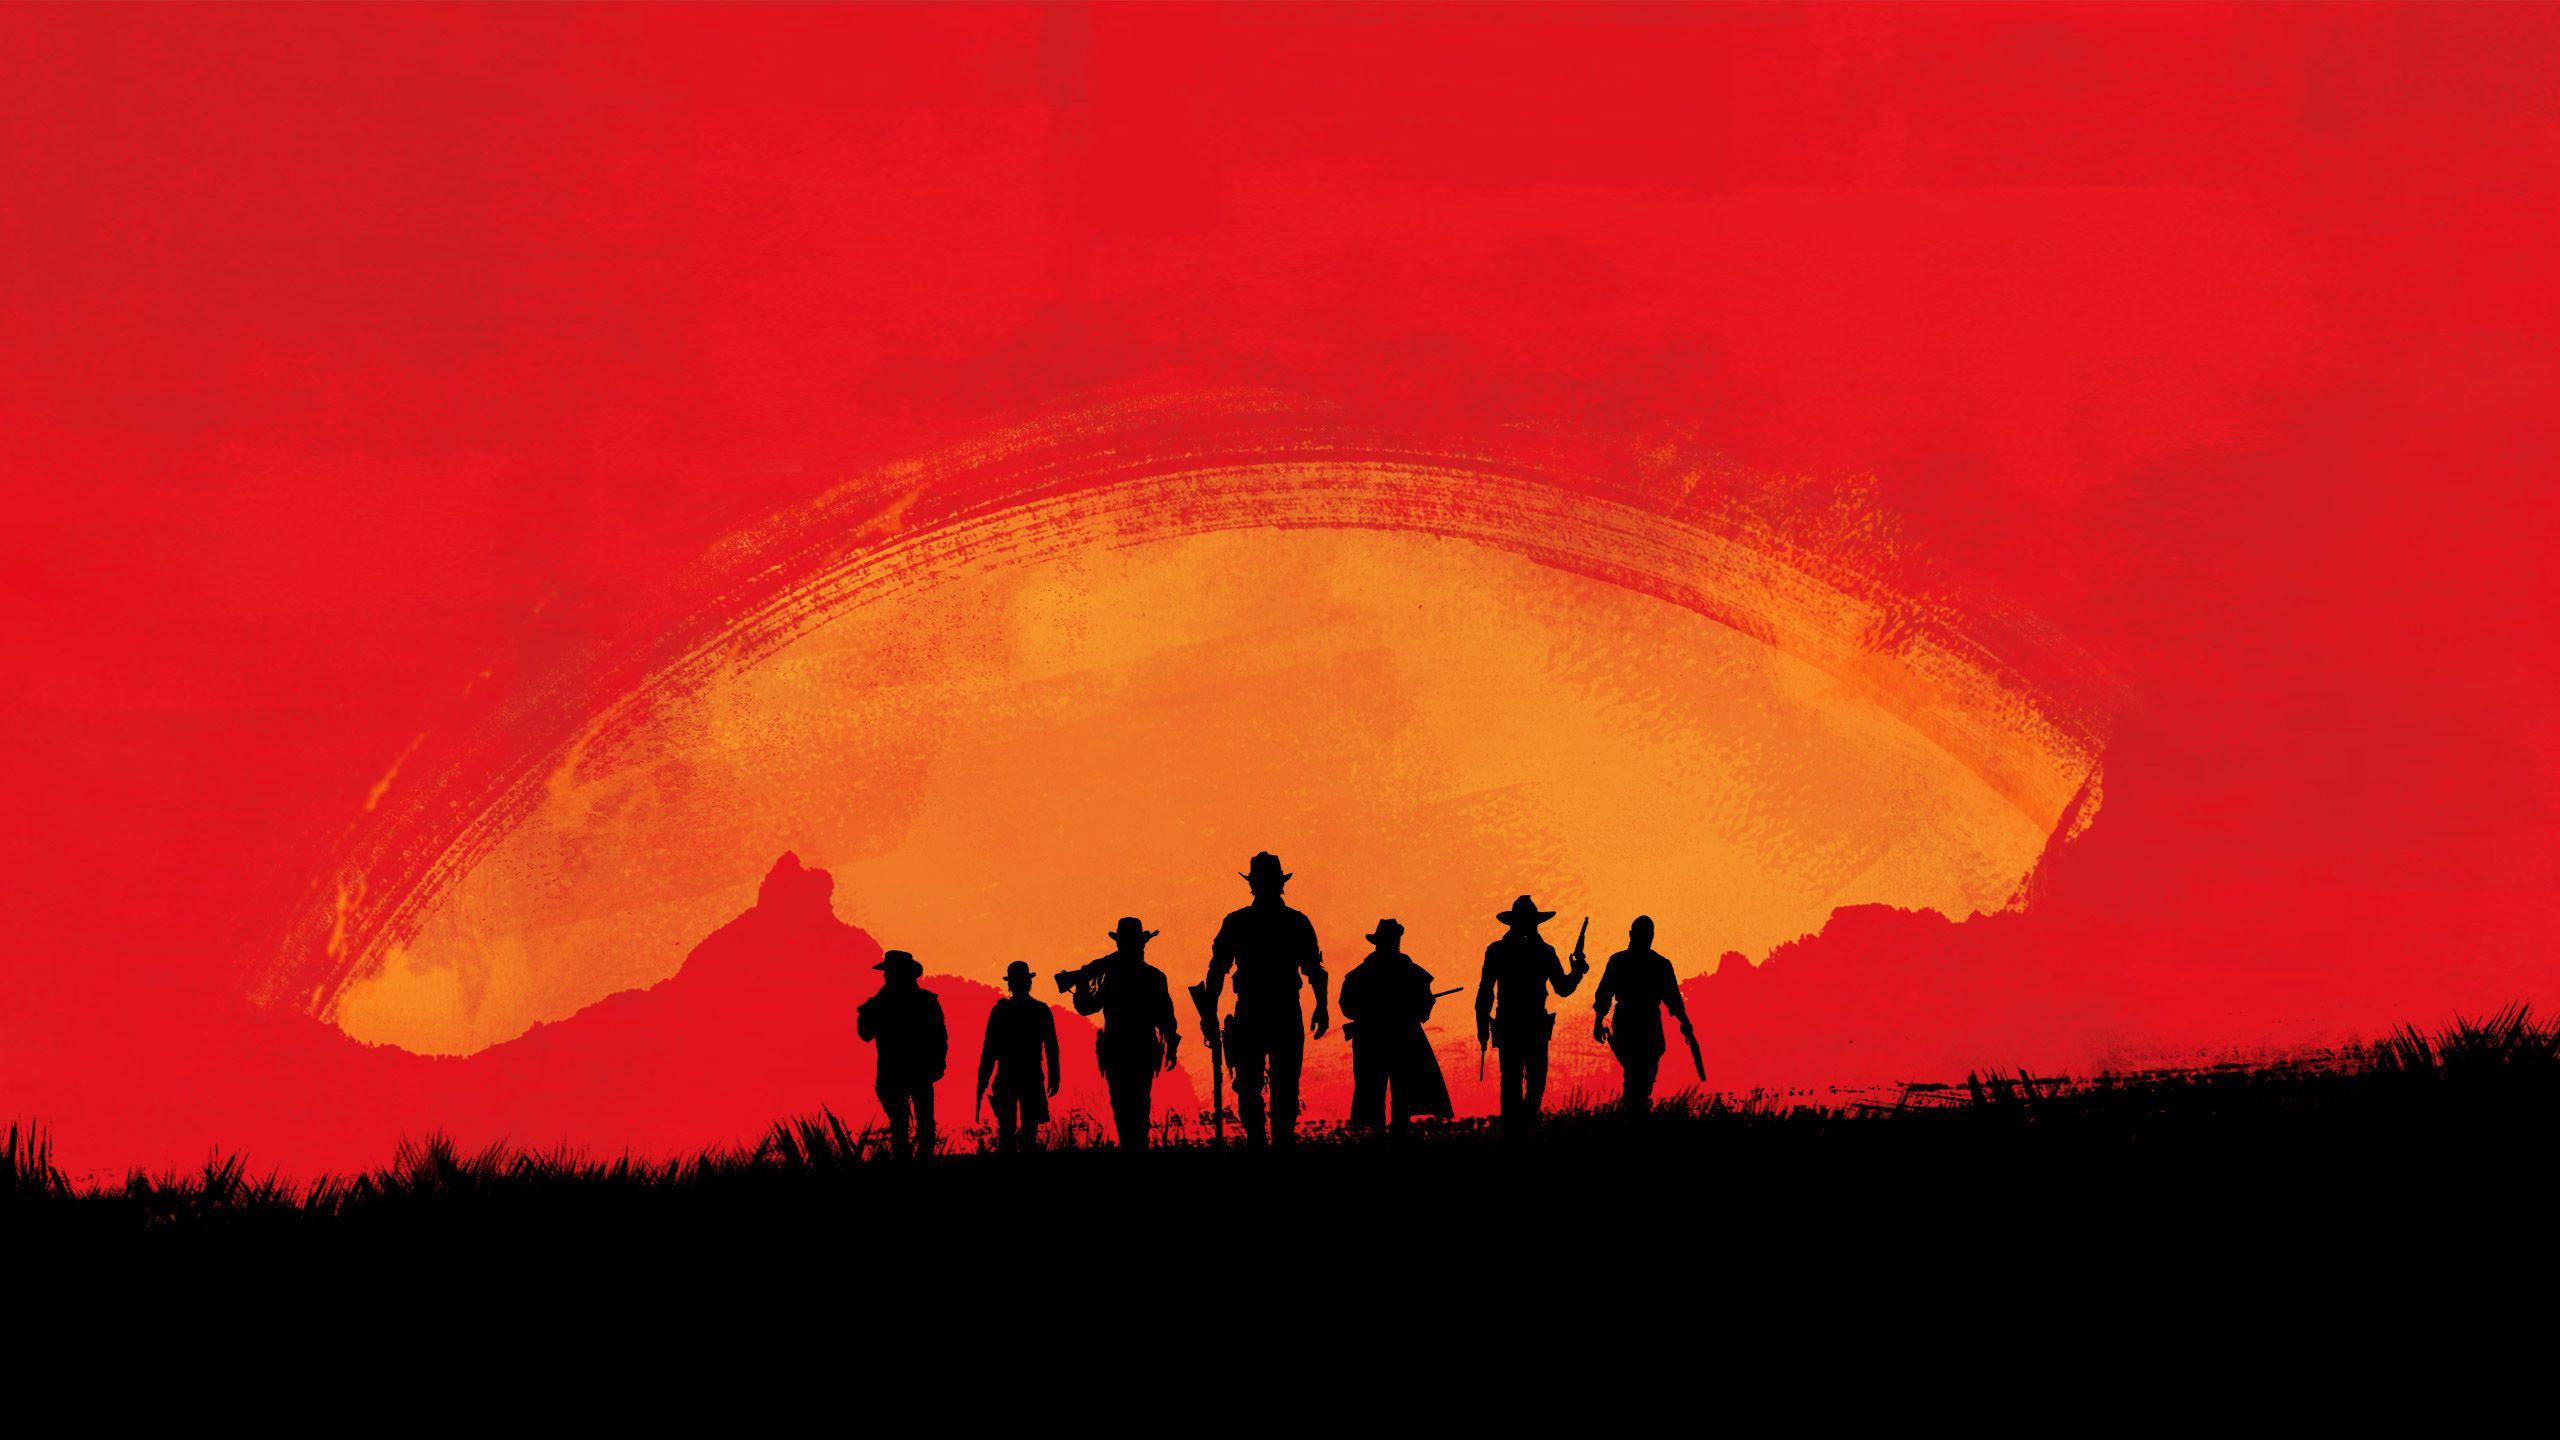 Hình nền Red Dead Redemption 2 trên PC là một tác phẩm nghệ thuật tuyệt vời, với hình ảnh đẹp tuyệt vời và cảm giác phiêu lưu tuyệt vời. Nếu bạn là một fan của trò chơi này, hãy tải ngay hình nền này để cảm nhận được sự ấn tượng và đẹp mắt mà game mang lại.